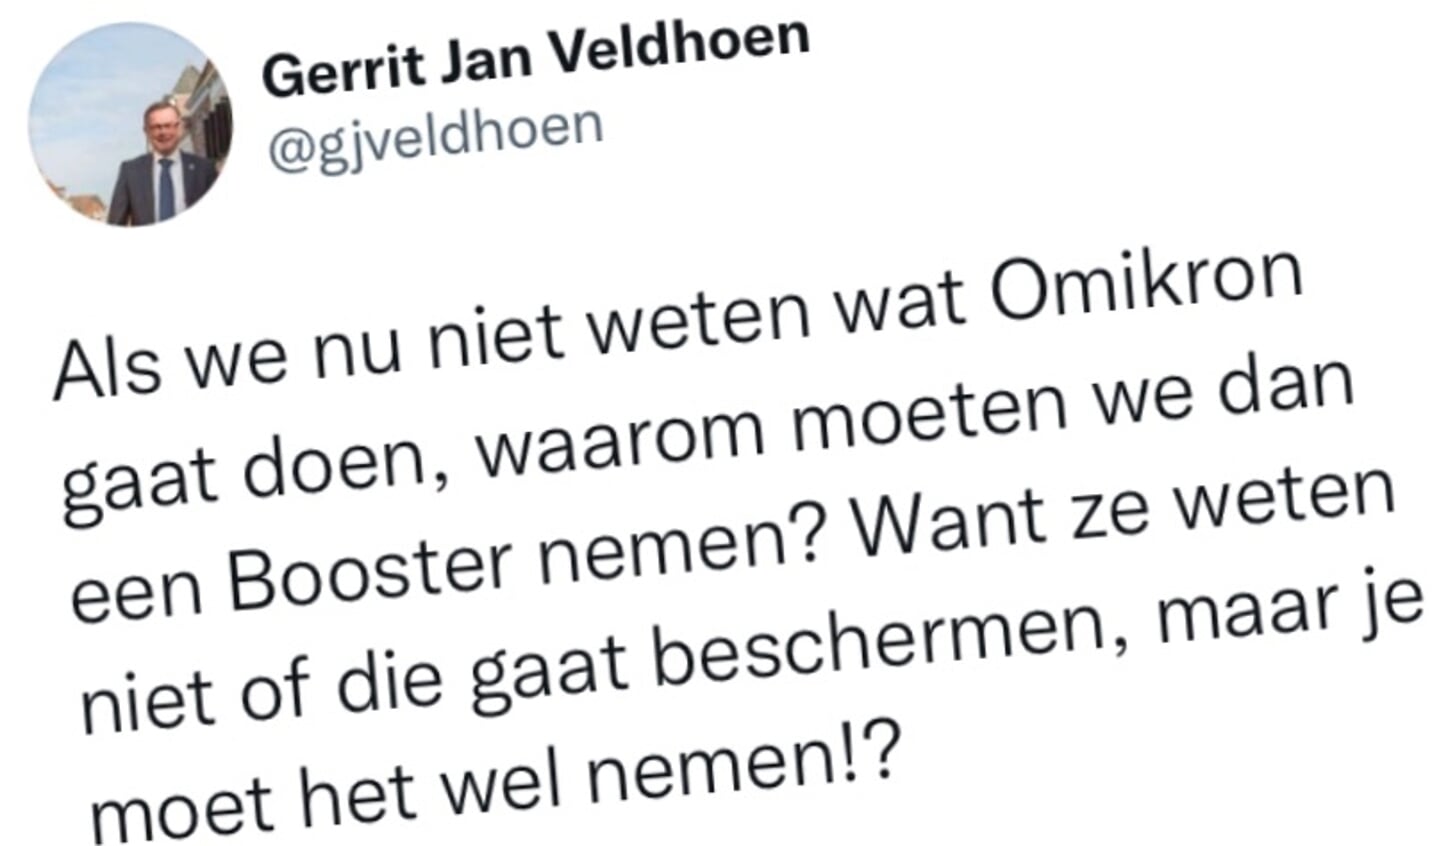 De tweet van Gerrit Jan Veldhoen.